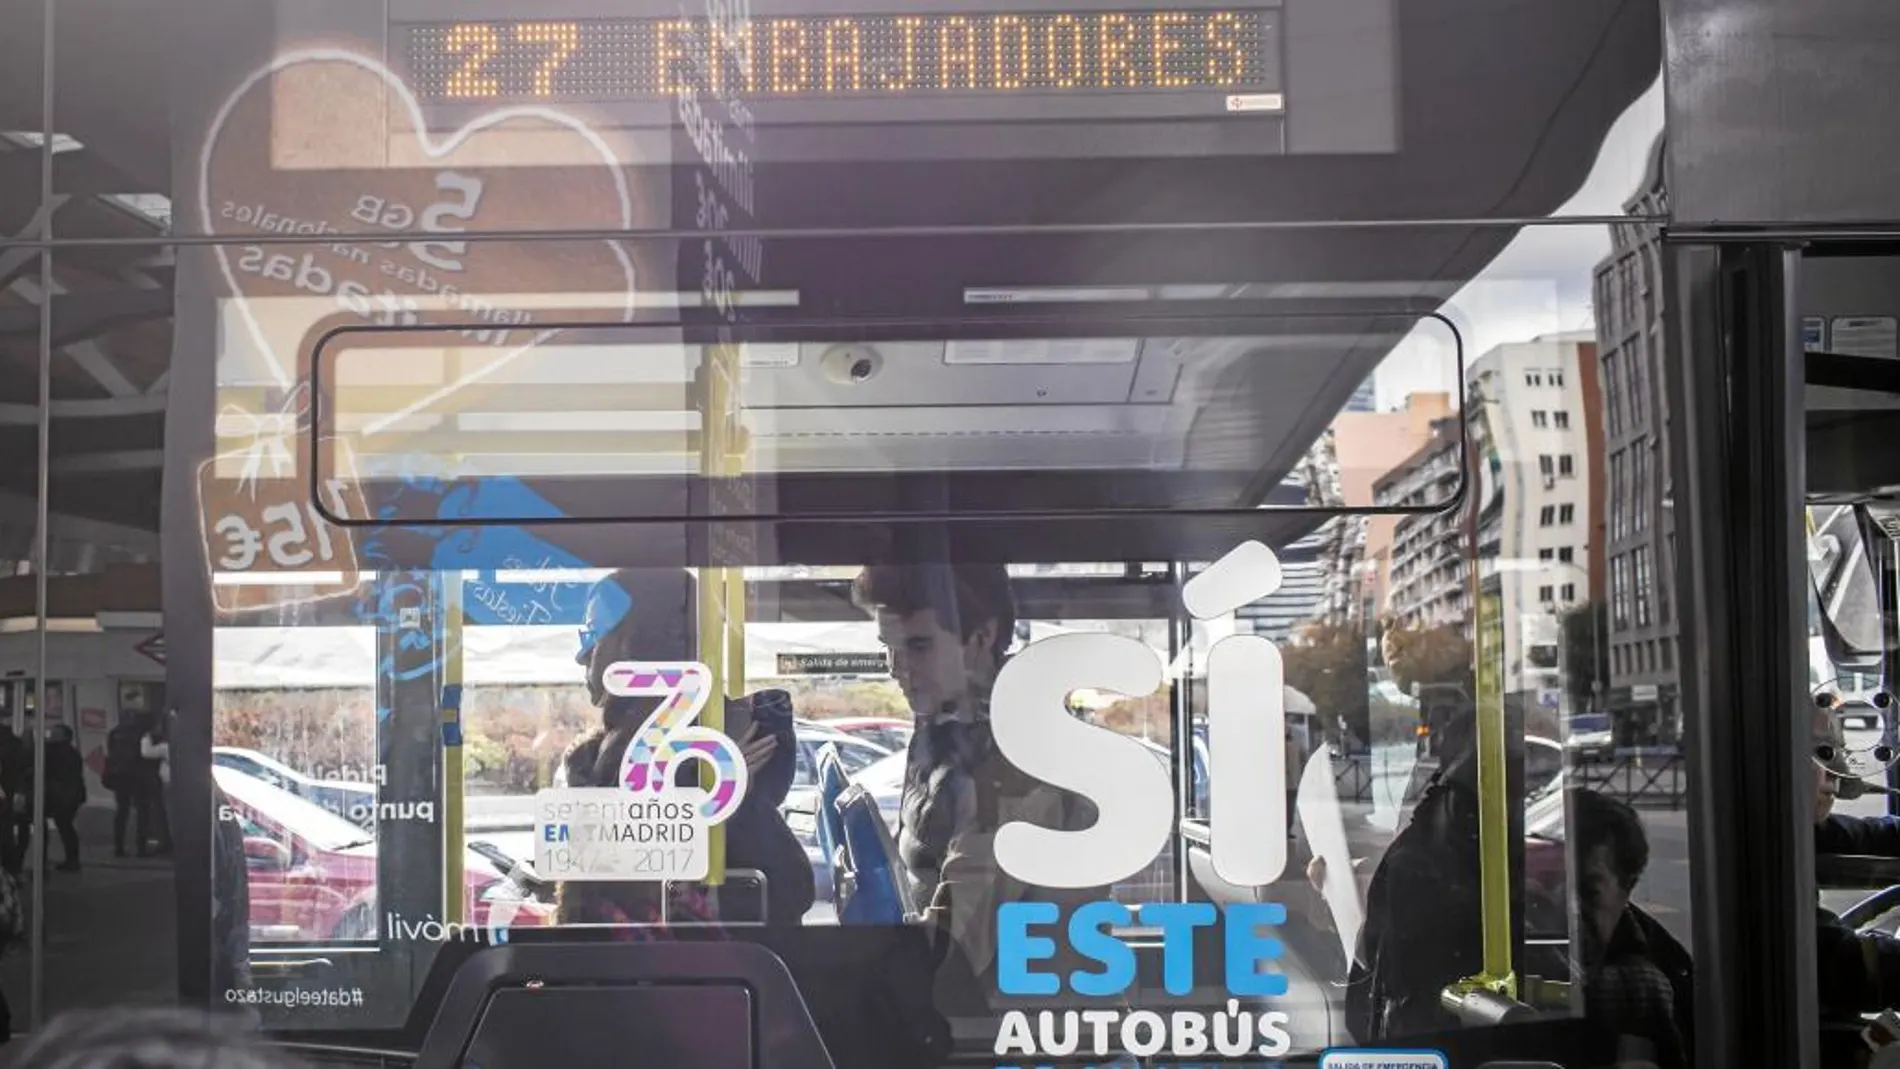 La línea 27 de Madrid recorre la distancia entre Atocha y Plaza de Castilla y suele ser utilizada por numerosos jóvenes